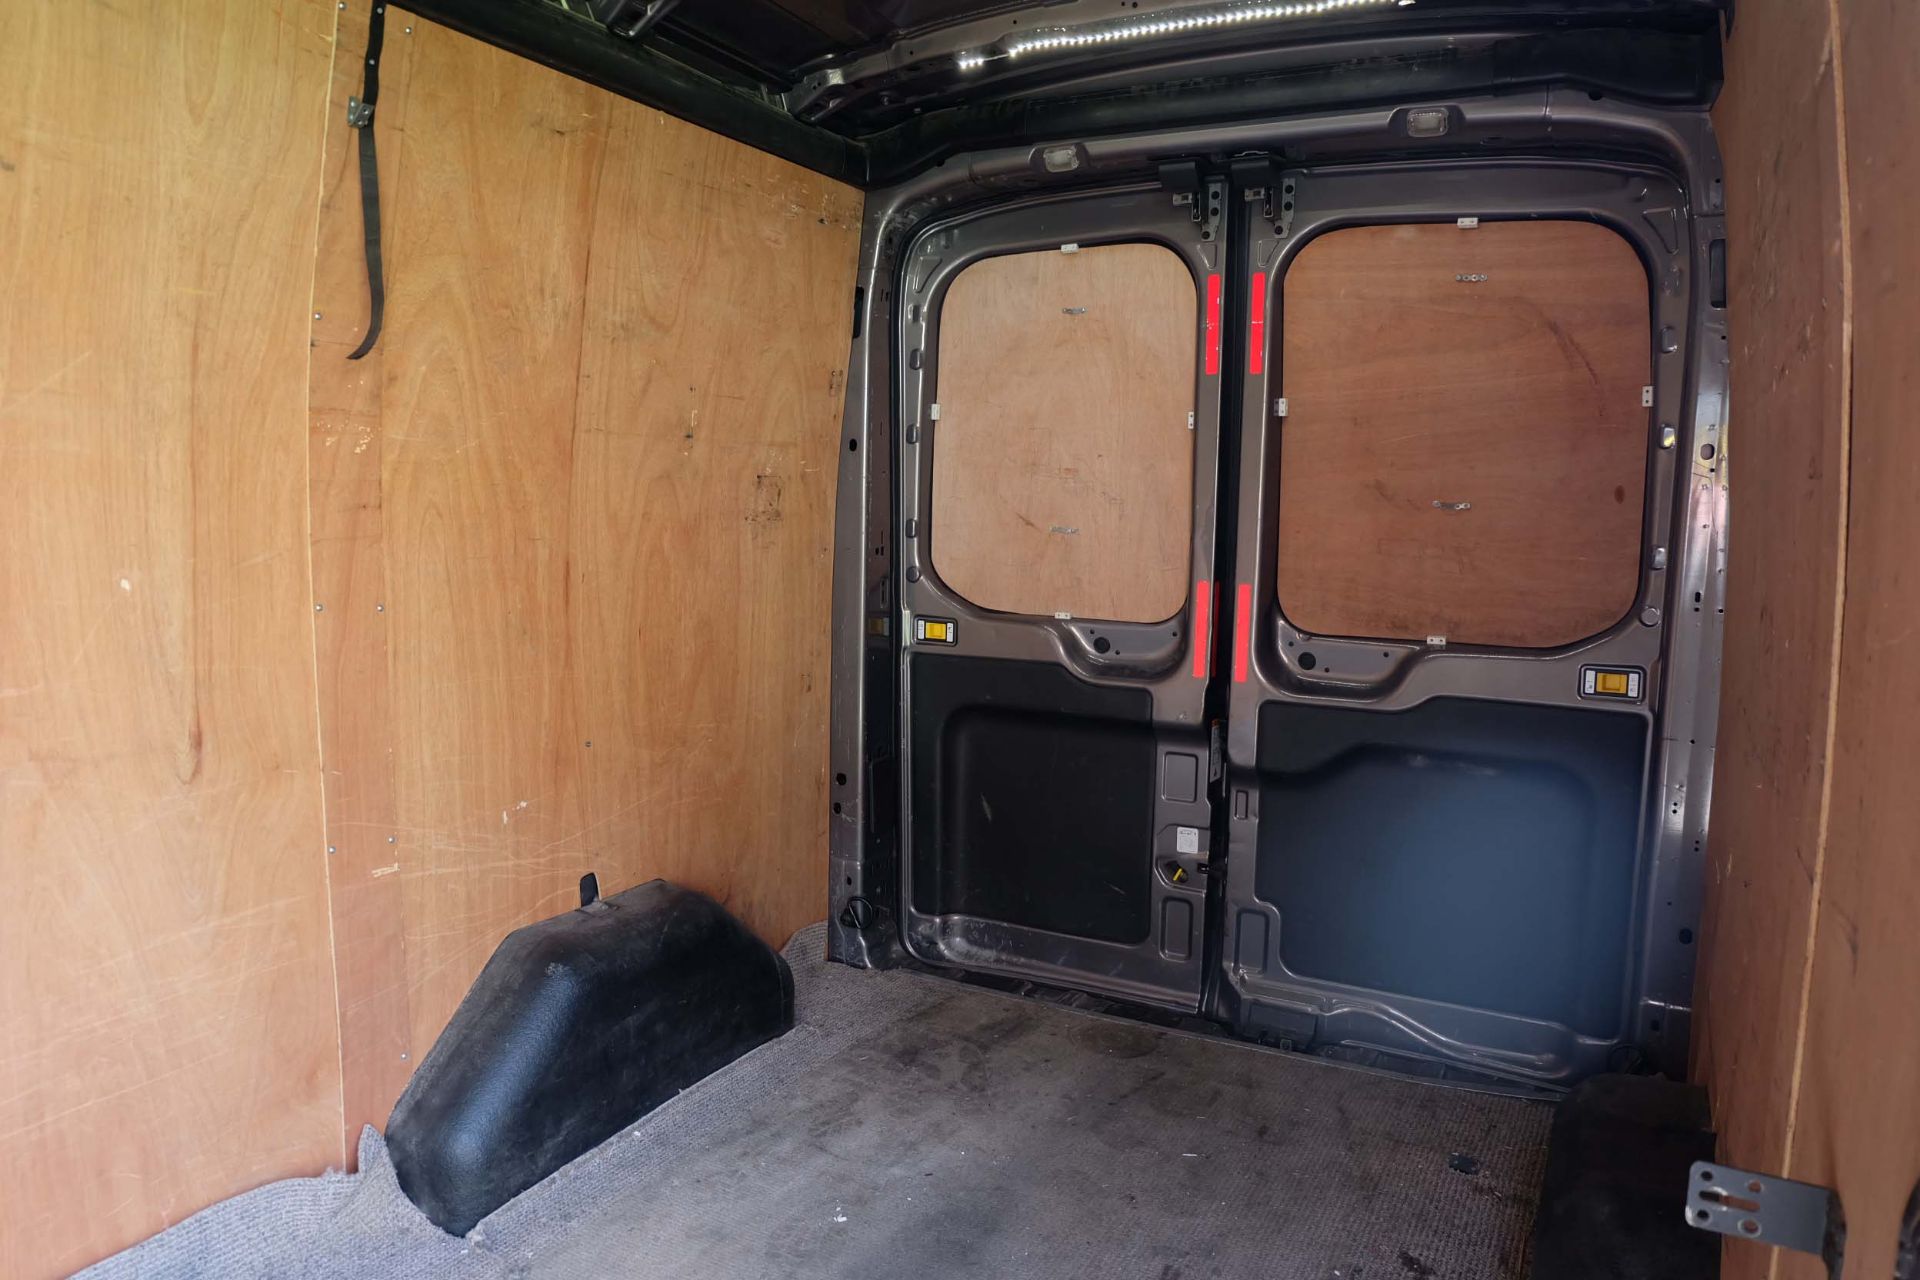 2014 Ford Transit 2.2TDCi Panel Van. 5 Door. Diesel. Manual. RWD. 125 PS. - Image 9 of 17